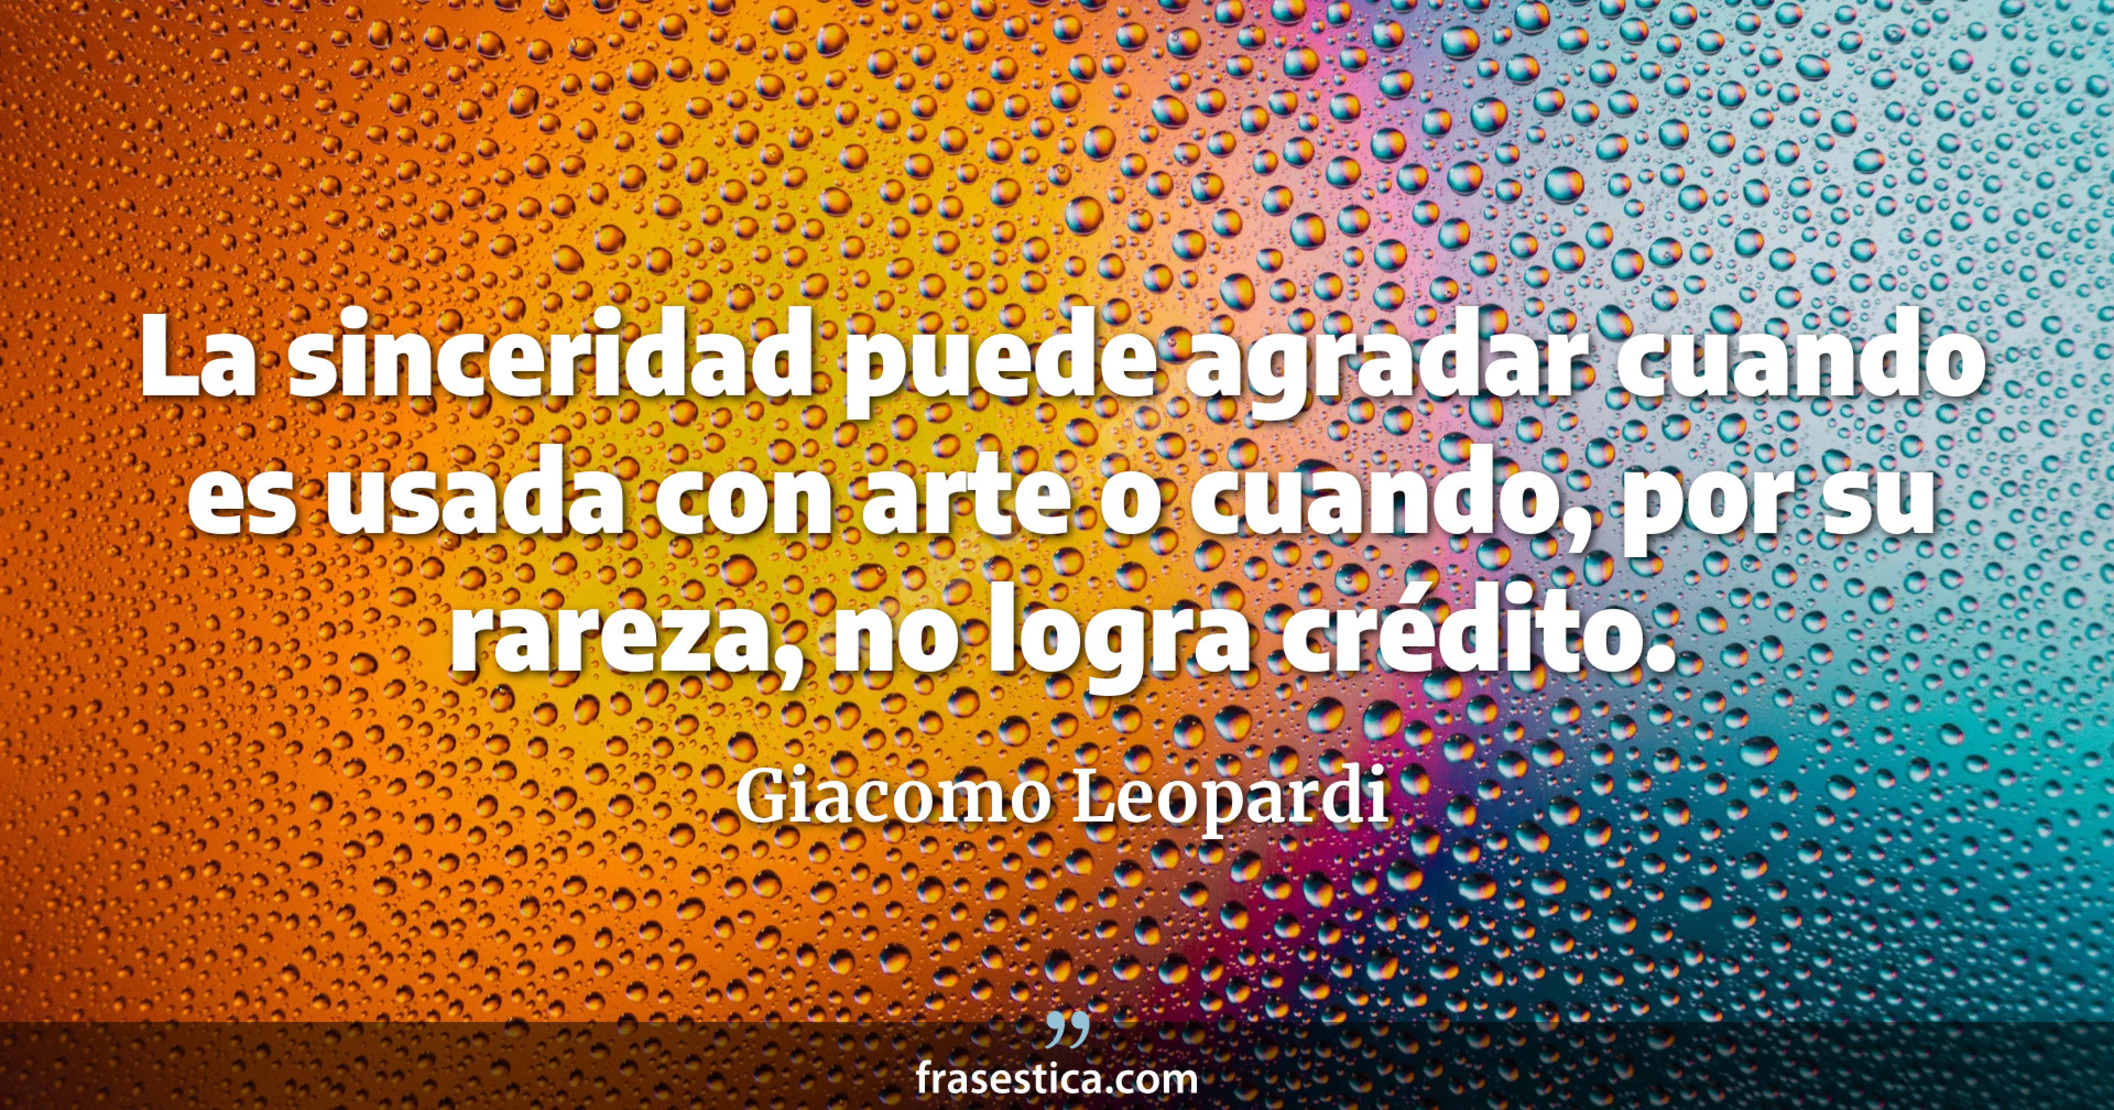 La sinceridad puede agradar cuando es usada con arte o cuando, por su rareza, no logra crédito. - Giacomo Leopardi